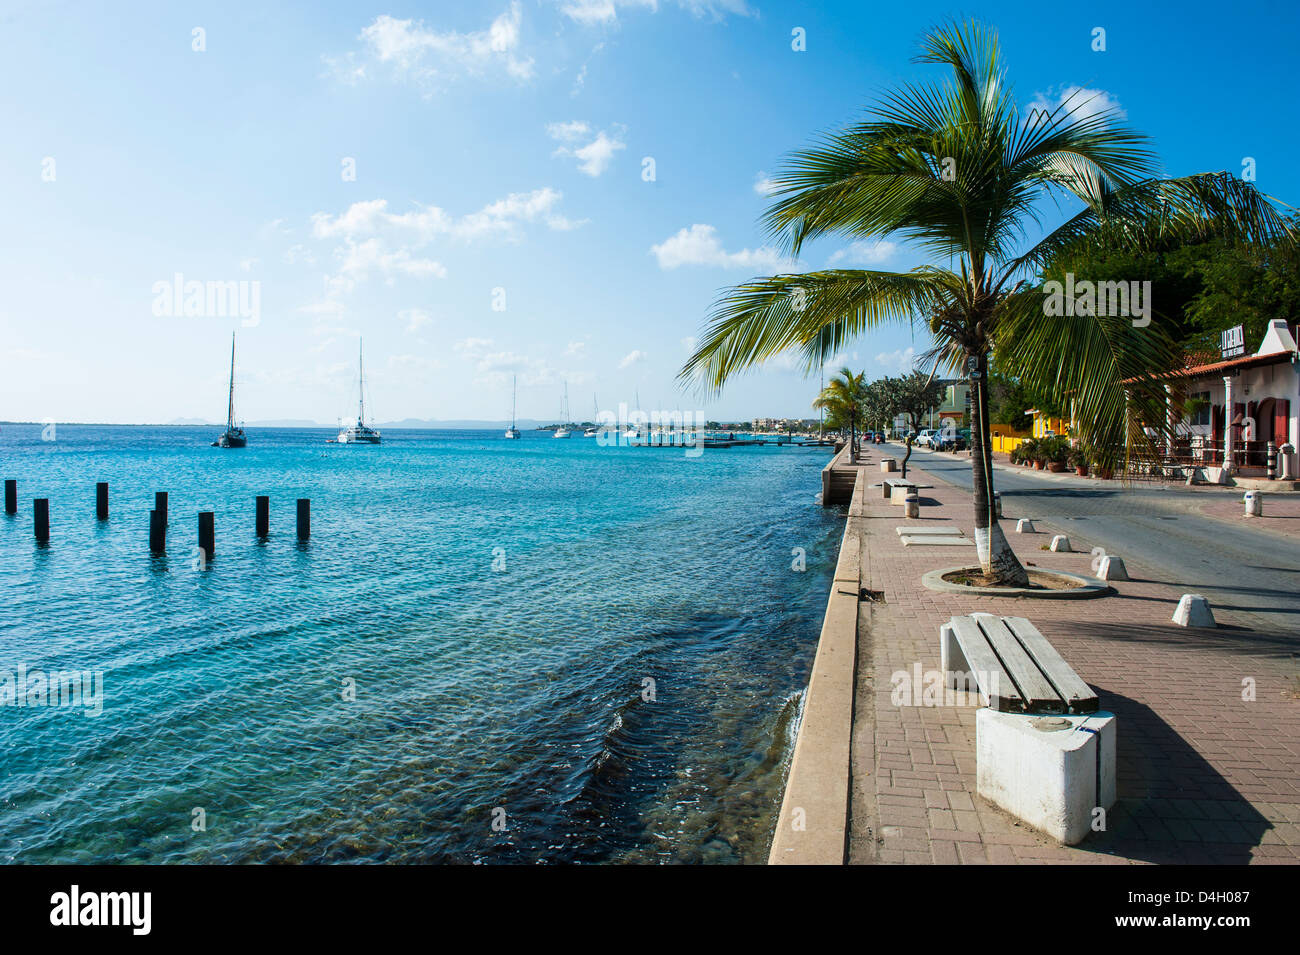 Pier de Kralendijk, la capitale de Bonaire Îles ABC, Netherlands Antilles, Caraïbes Banque D'Images